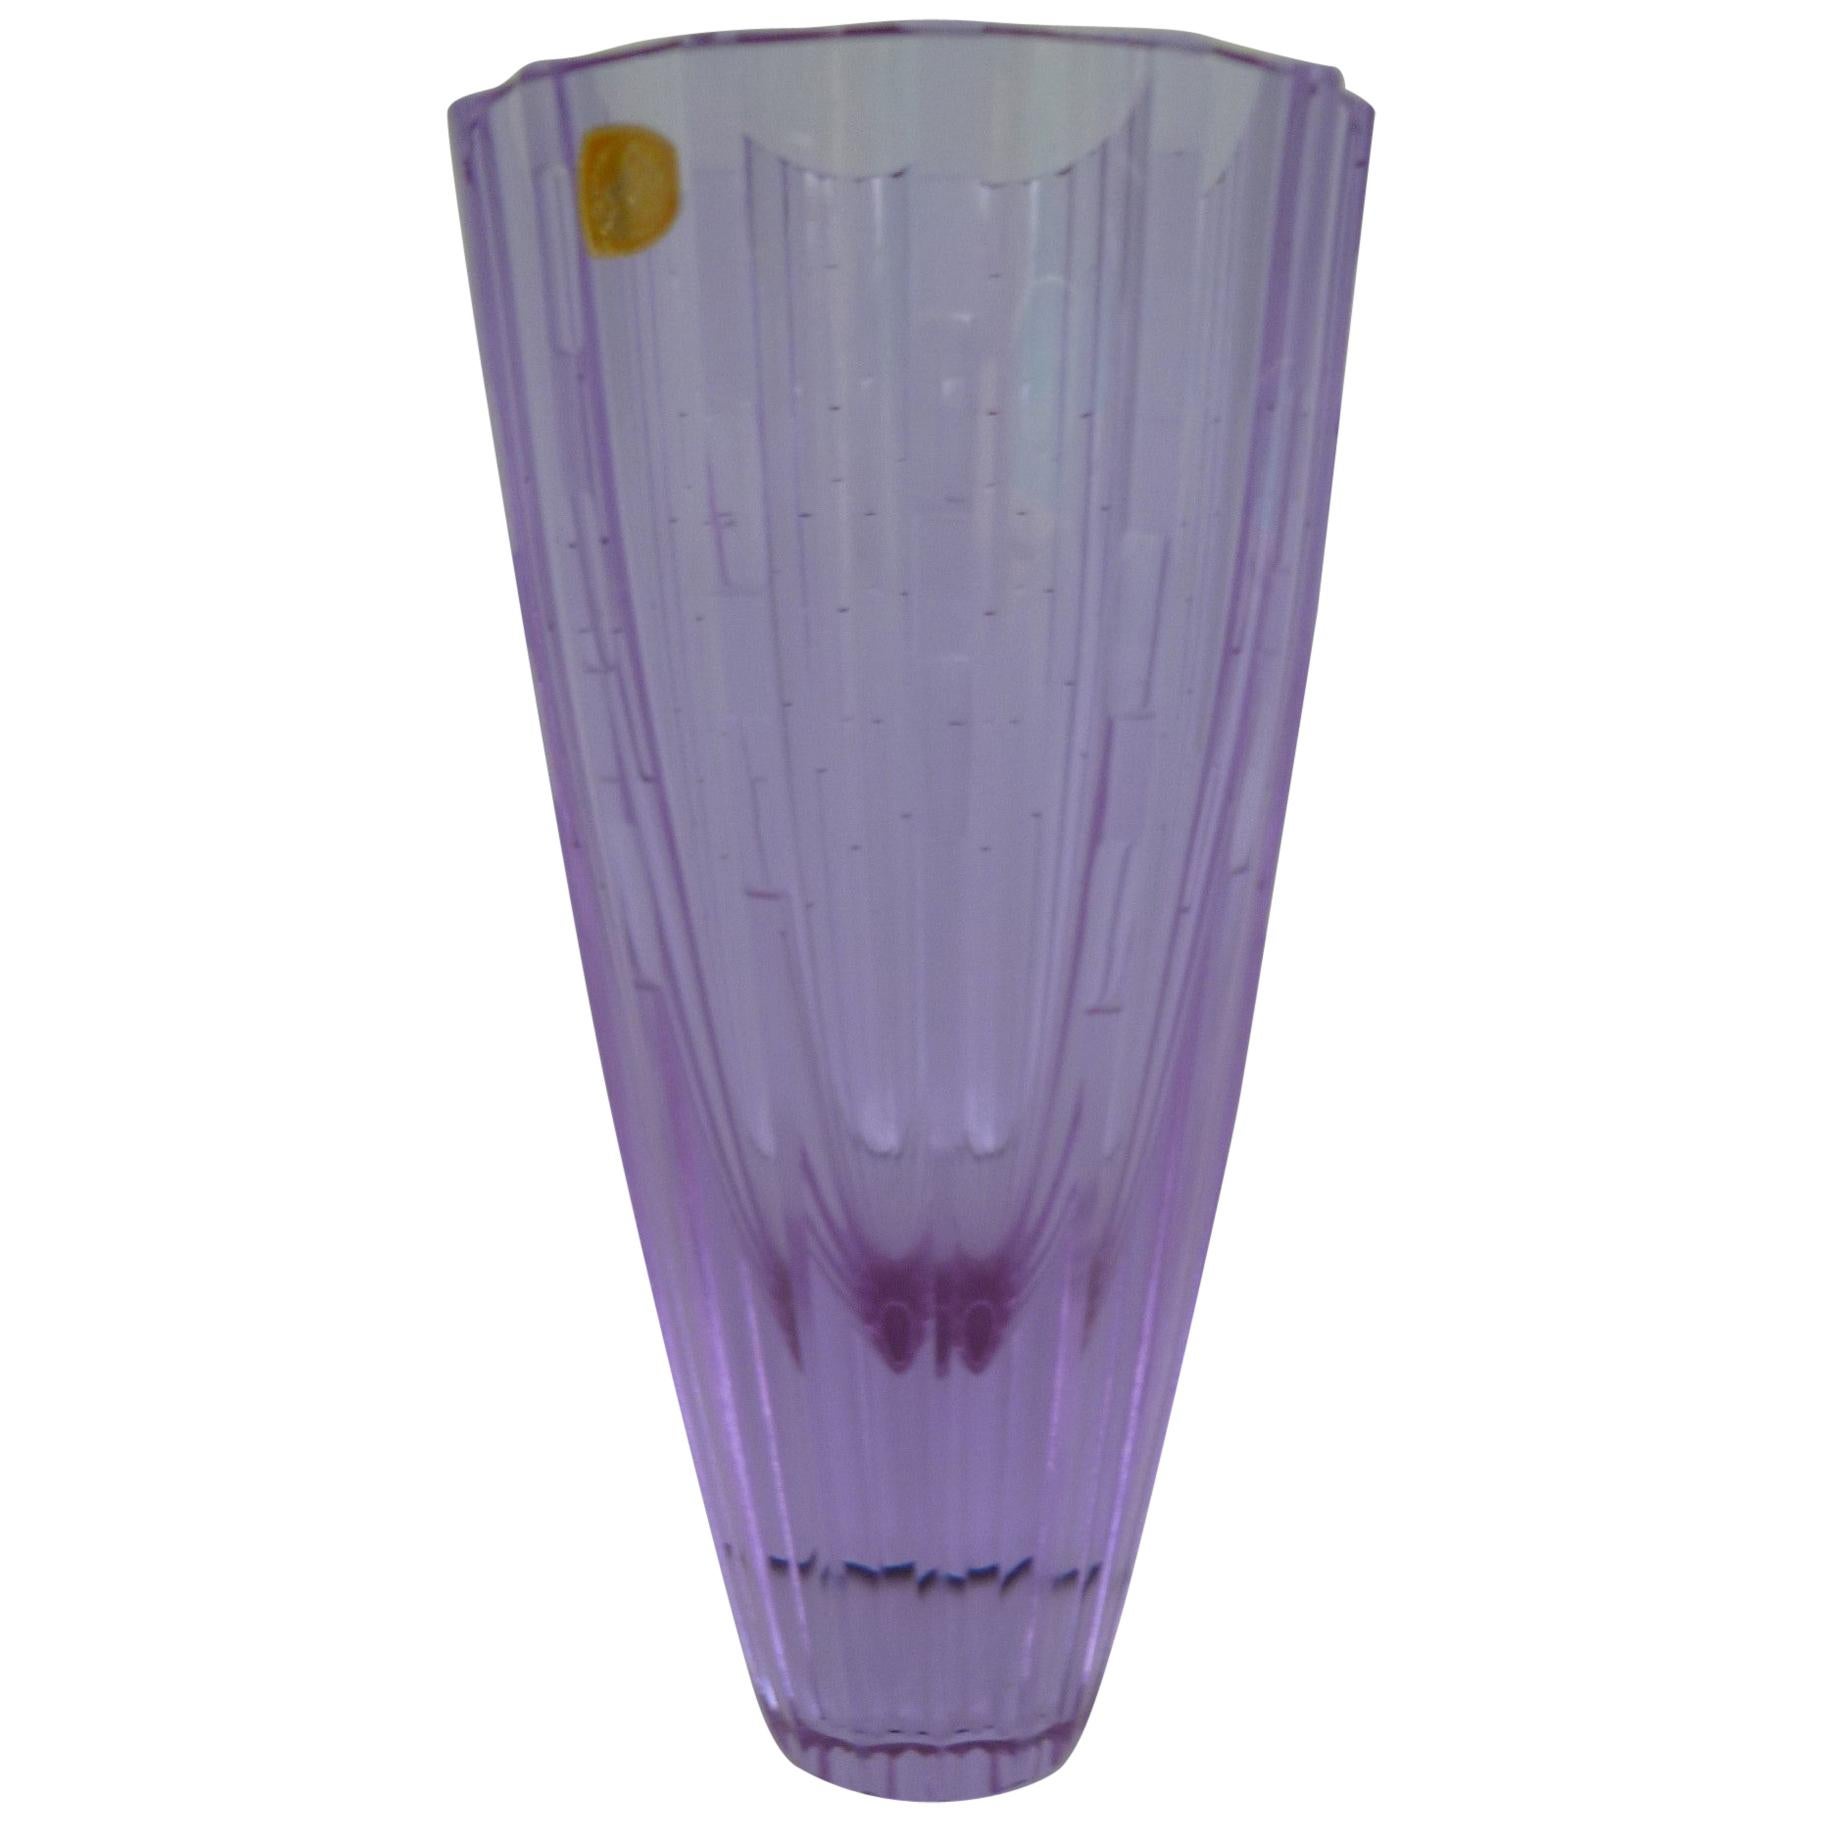 Bohemian Neodymiun Glass Vase for Zelezdroske Sklo Czechoslovakia, 1960s